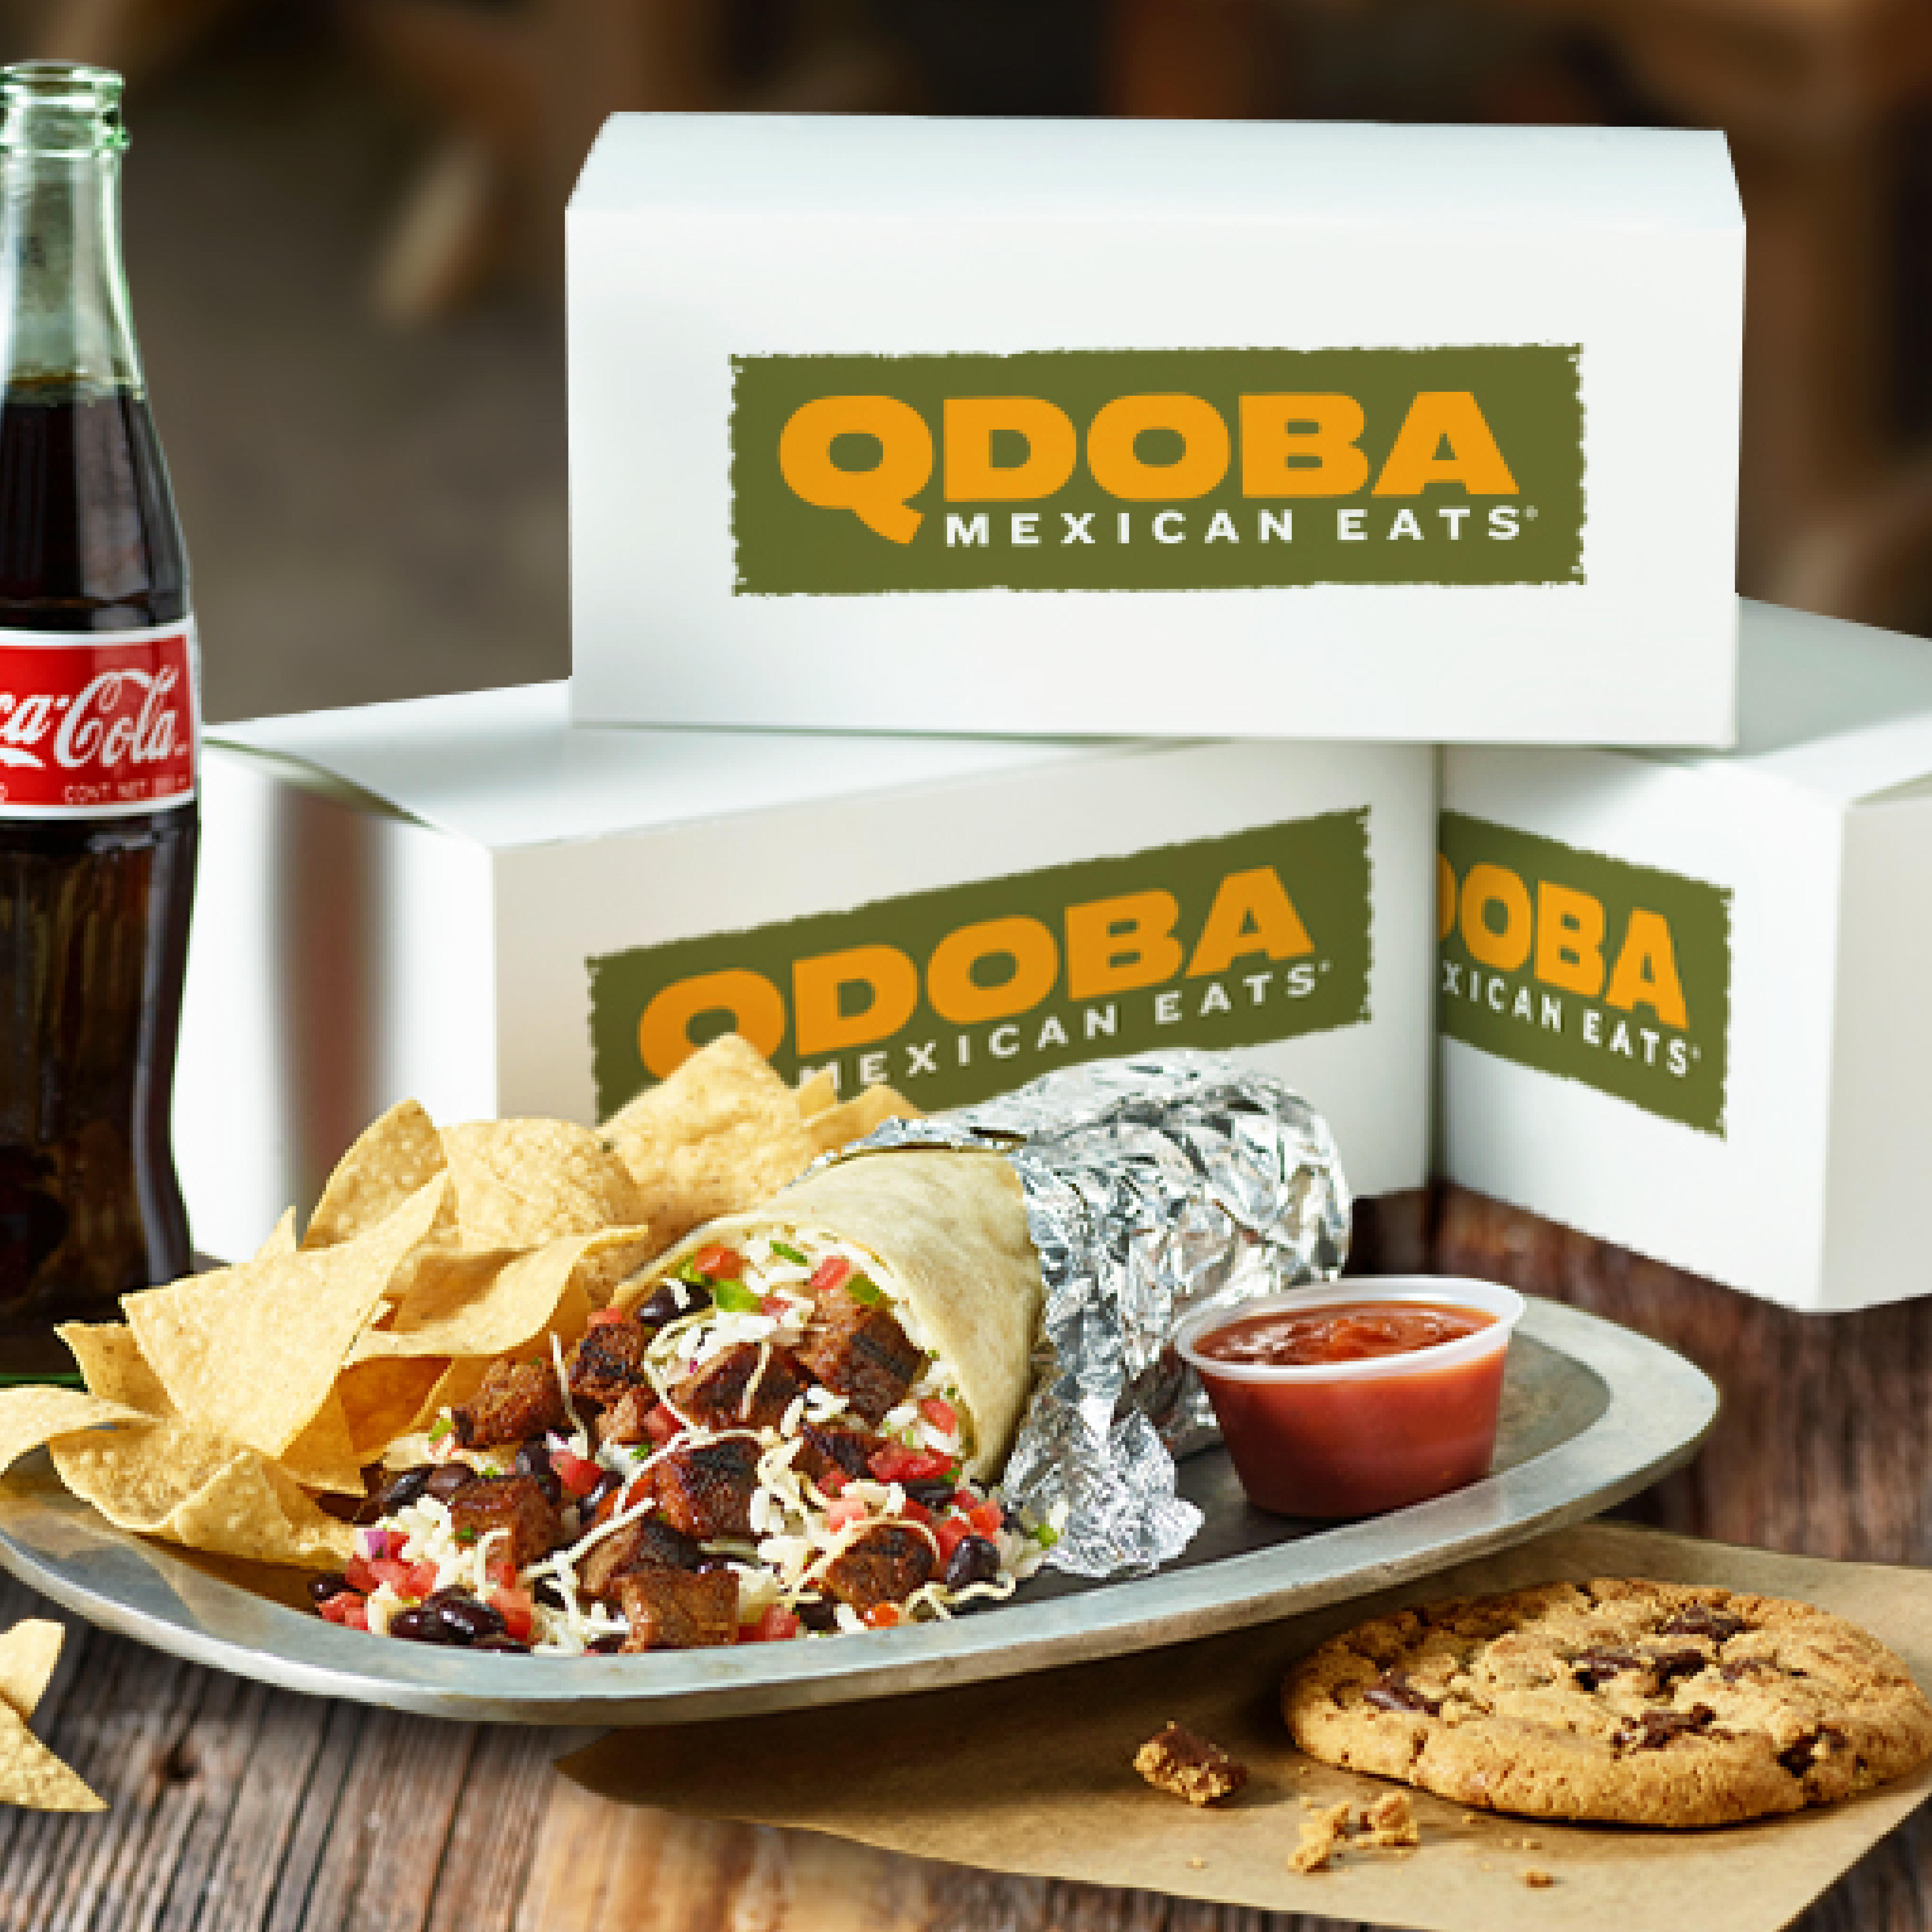 QDOBA Mexican Eats Photo